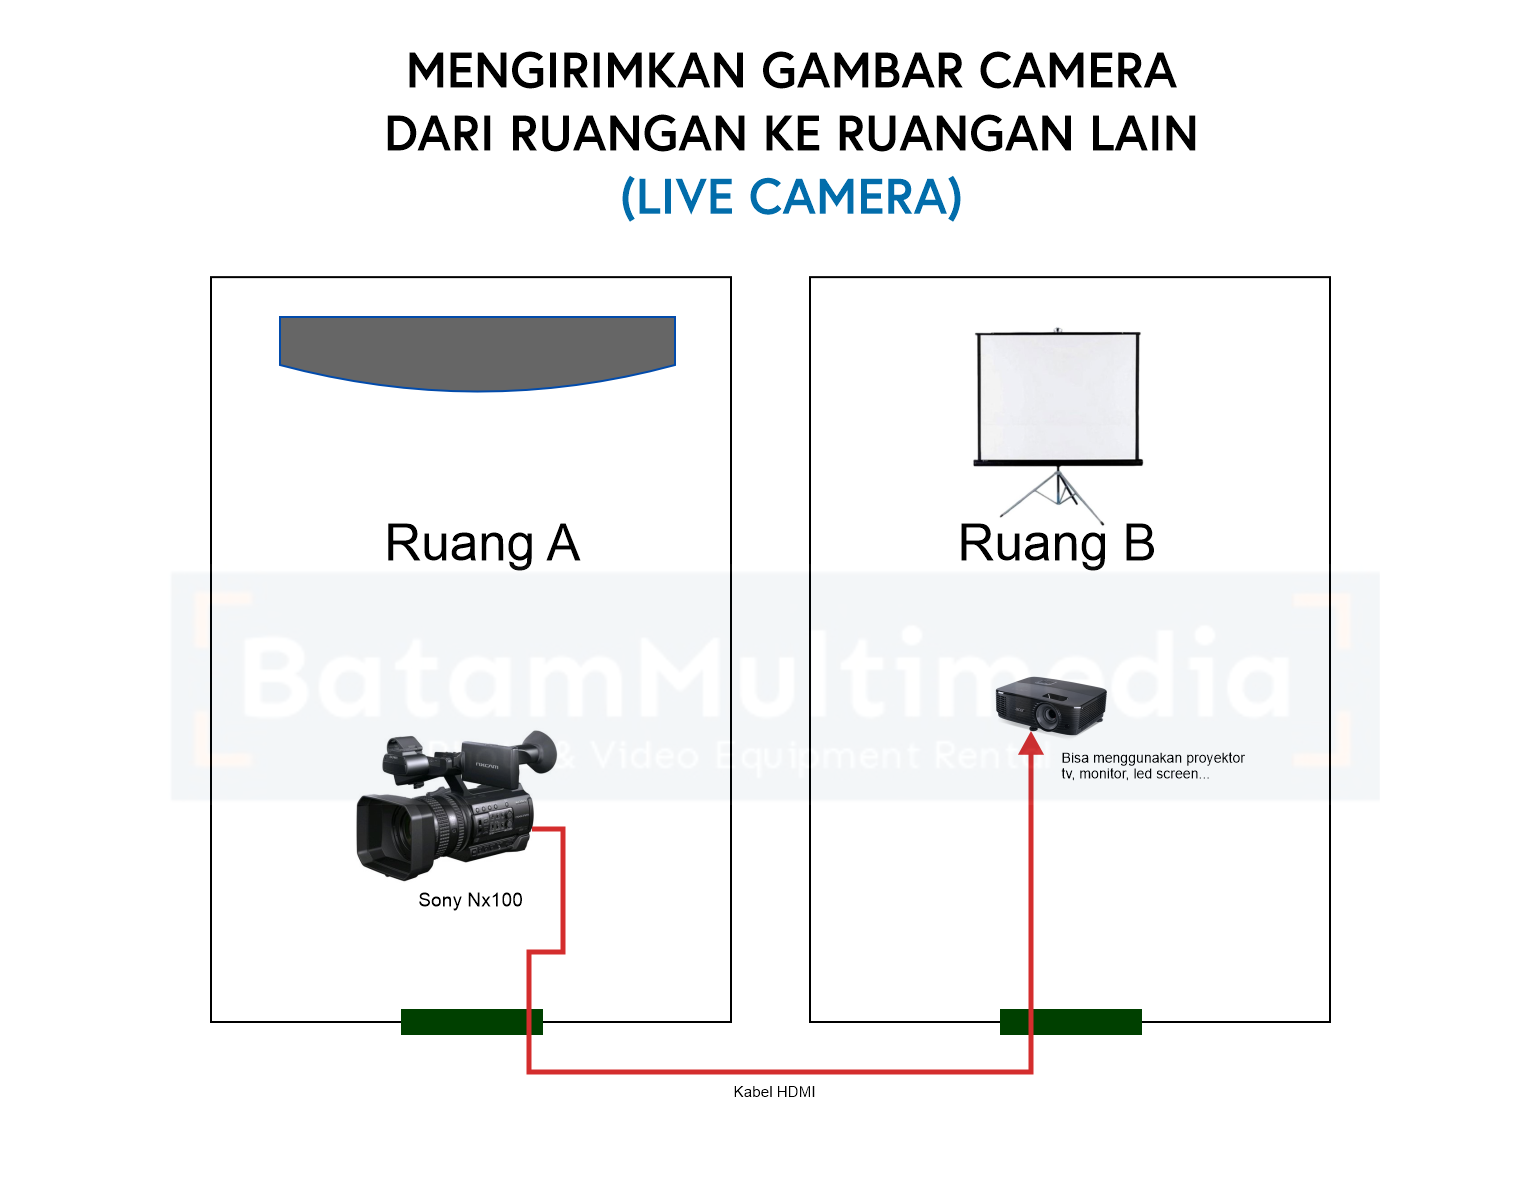 Cara Mengirimkan Gambar Kamera Ruangan ke Ruangan Lain - Batam Multimedia